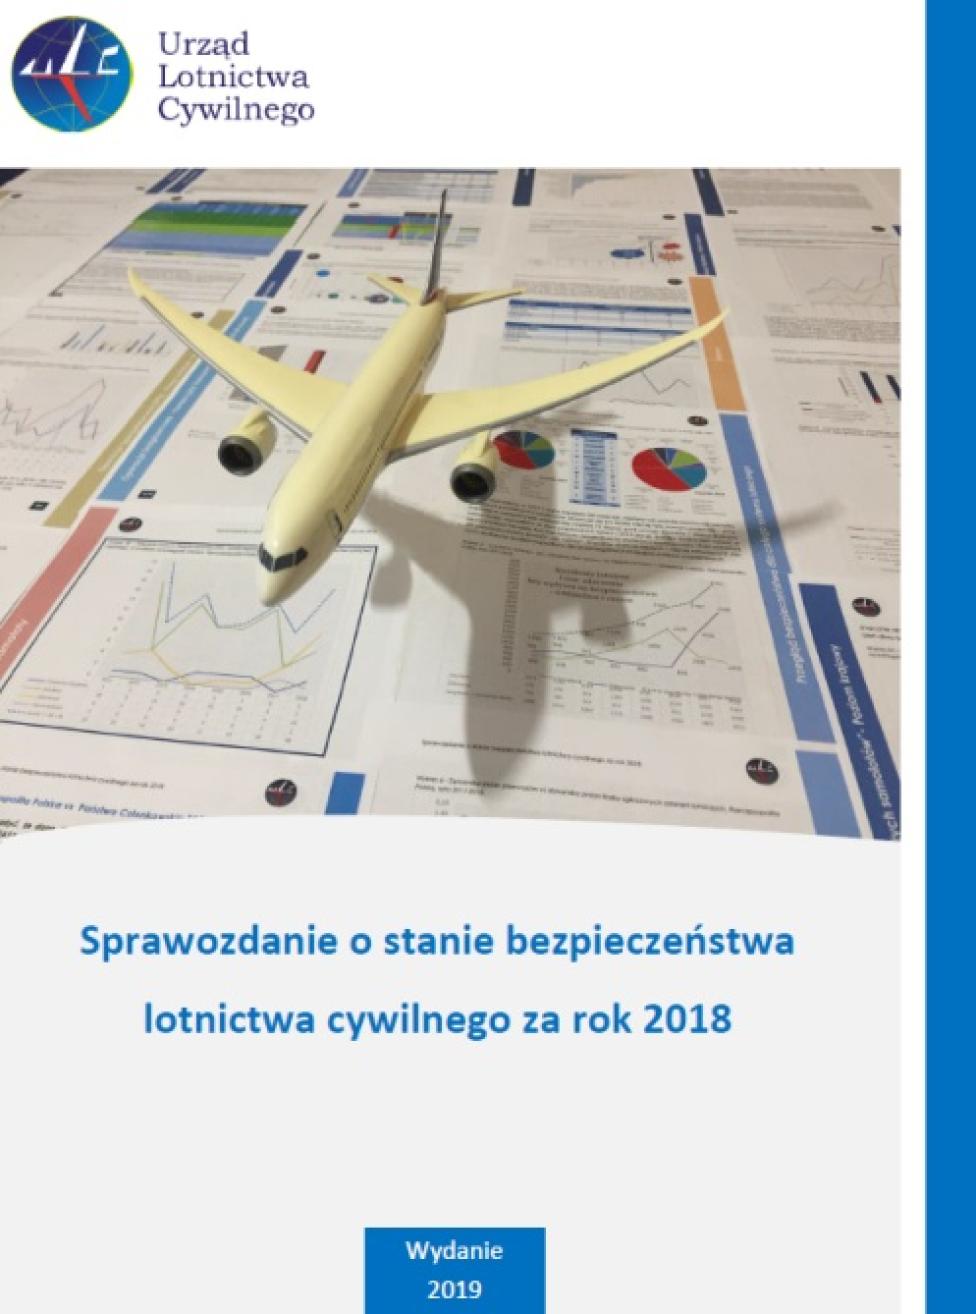 Sprawozdanie o stanie bezpieczeństwa lotnictwa cywilnego za 2018 rok (fot. ULC)